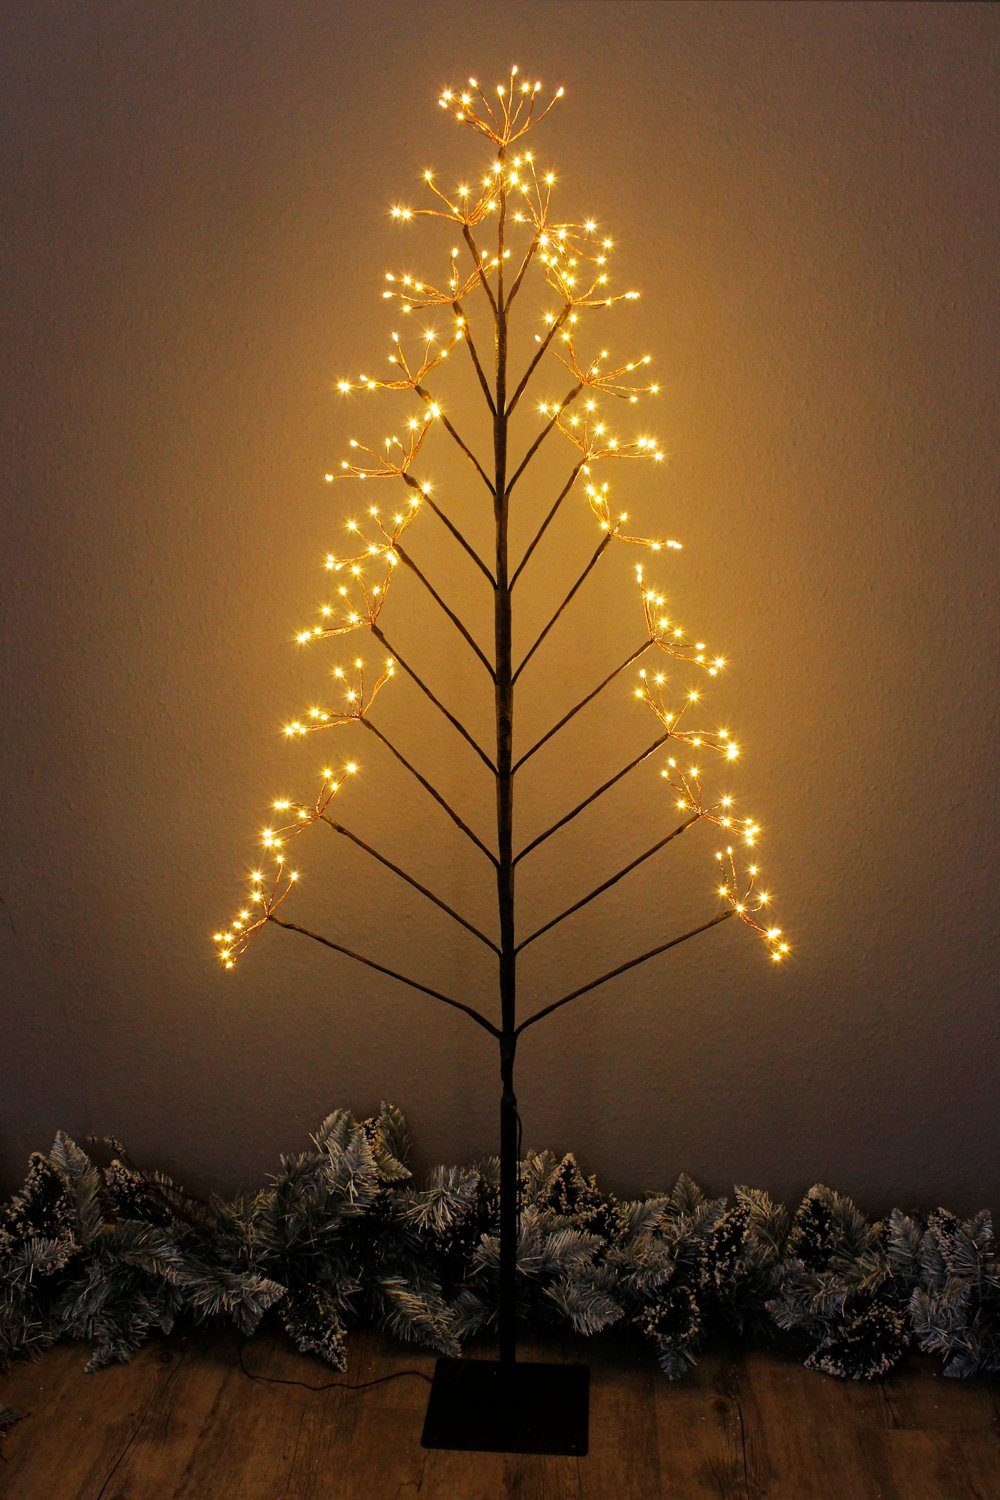 https://i.otto.de/i/otto/272aaf00-2386-4b1c-abd3-0828a095d758/arnusa-led-baum-leuchtbaum-elegance-feuerwerk-150cm-kupfer-stehlampe-weihnachtsbaum-an-aus-led-fest-integriert-warmweiss-dekoleuchte-warmweiss-innen-und-aussen-weihnachtsbeleuchtung.jpg?$formatz$